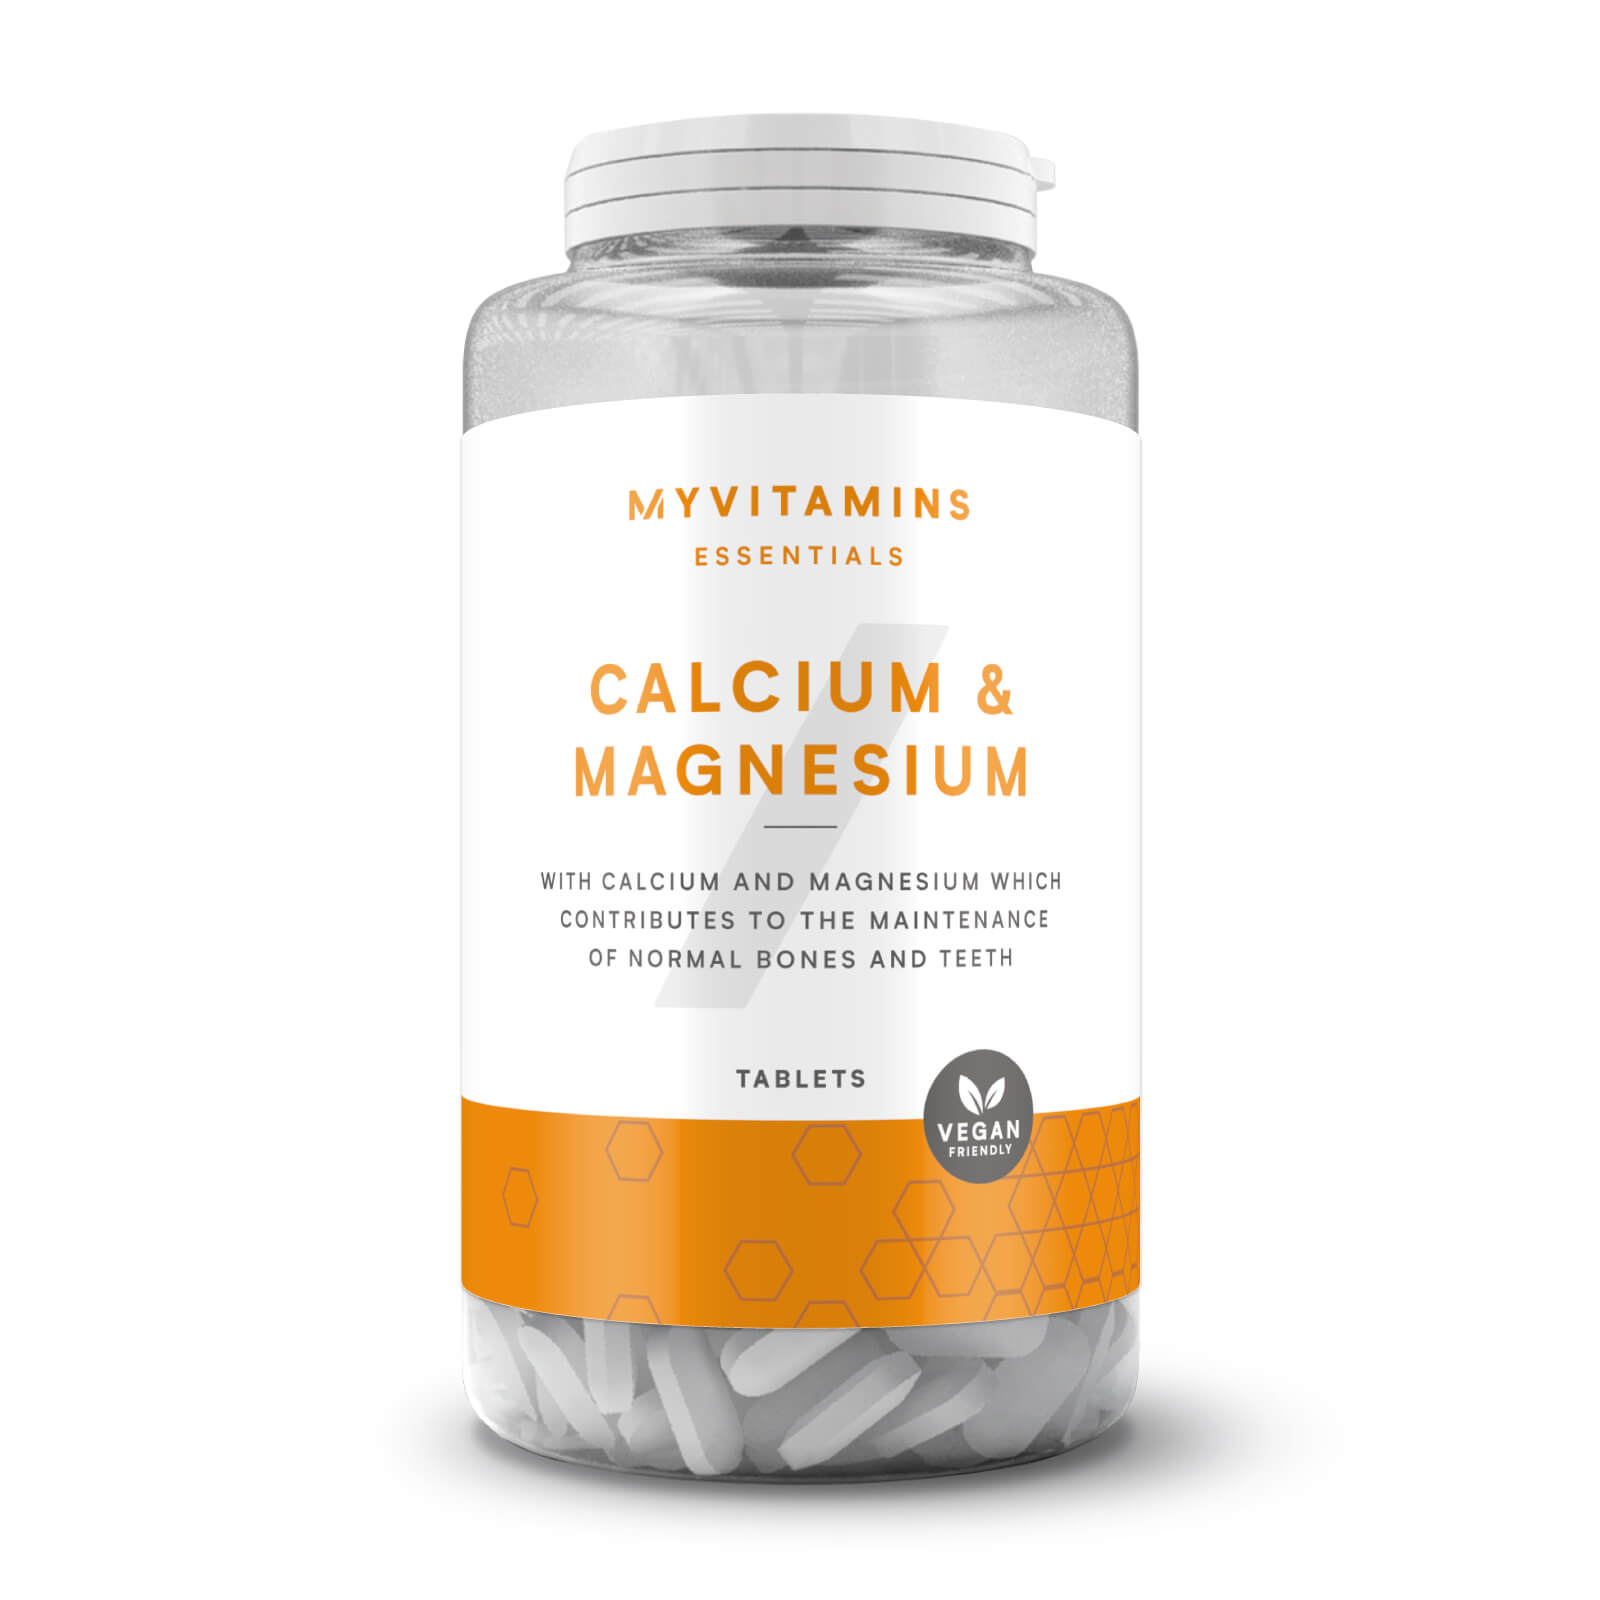 Myvitamins Calcium & Magnesium Tablets - 90Tabletas